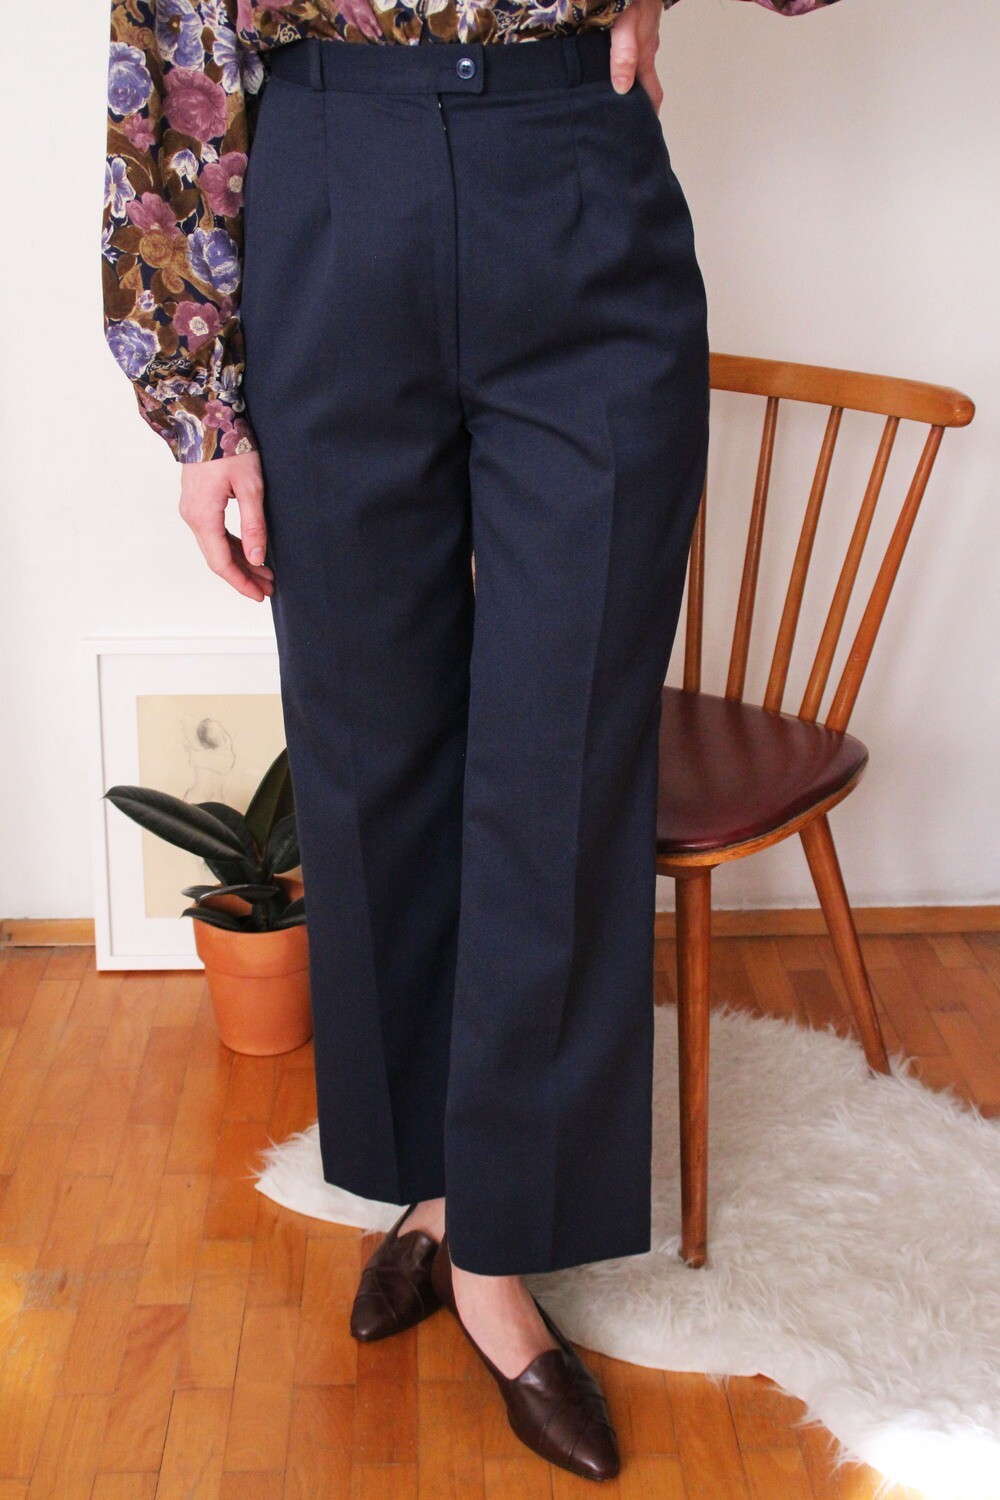 High waist navy pants